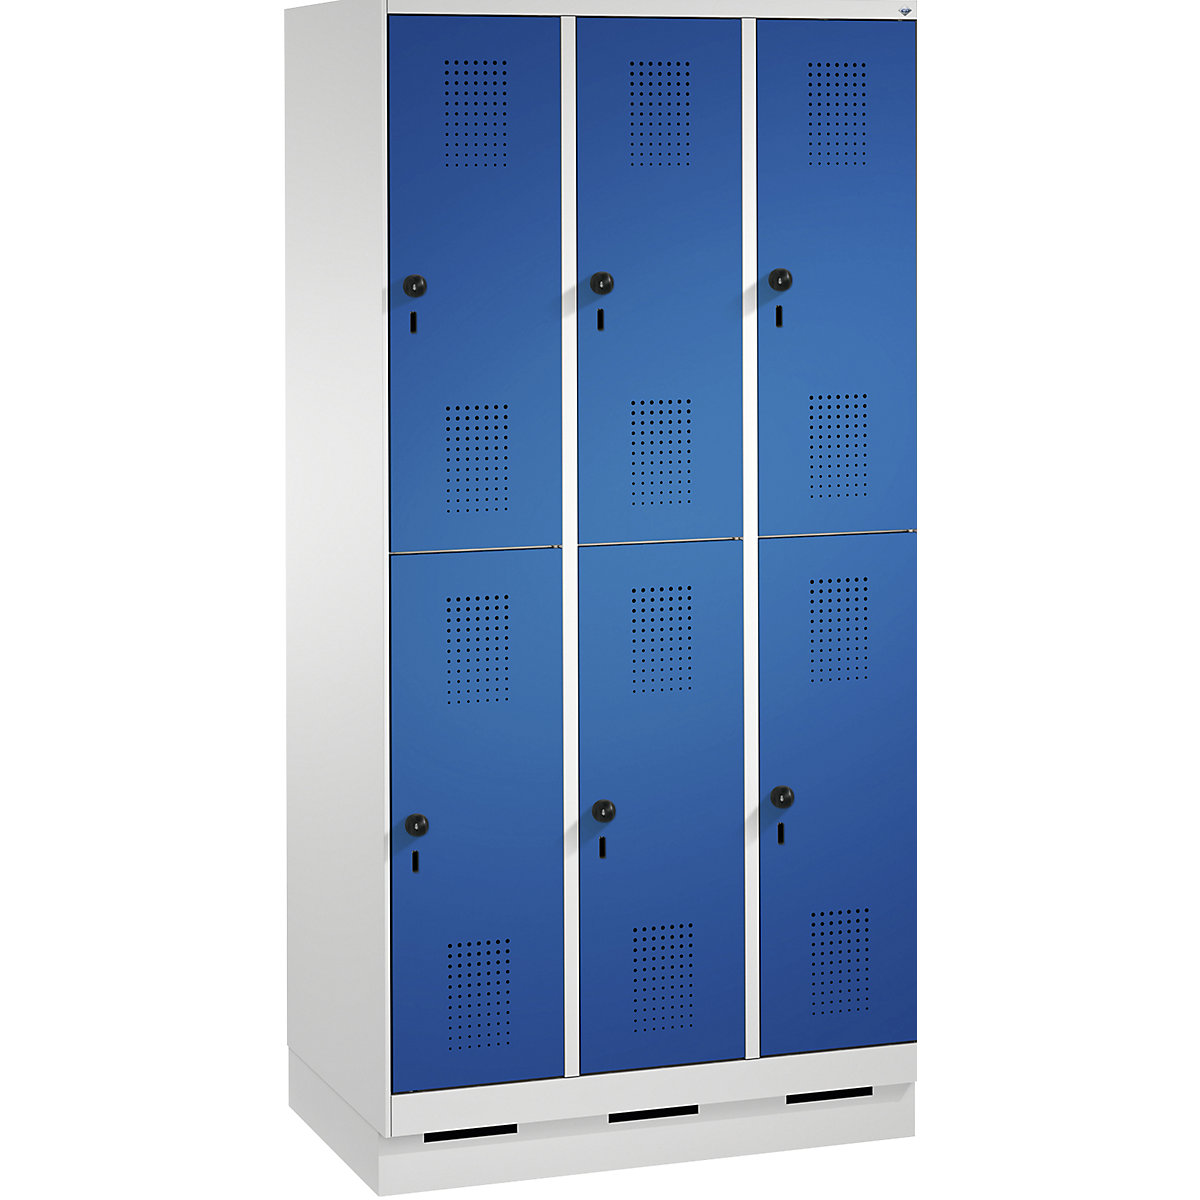 Penderie sur socle EVOLO à deux étages – C+P, 3 compartiments, 2 casiers chacun, largeur compartiments 300 mm, gris clair / bleu gentiane-2